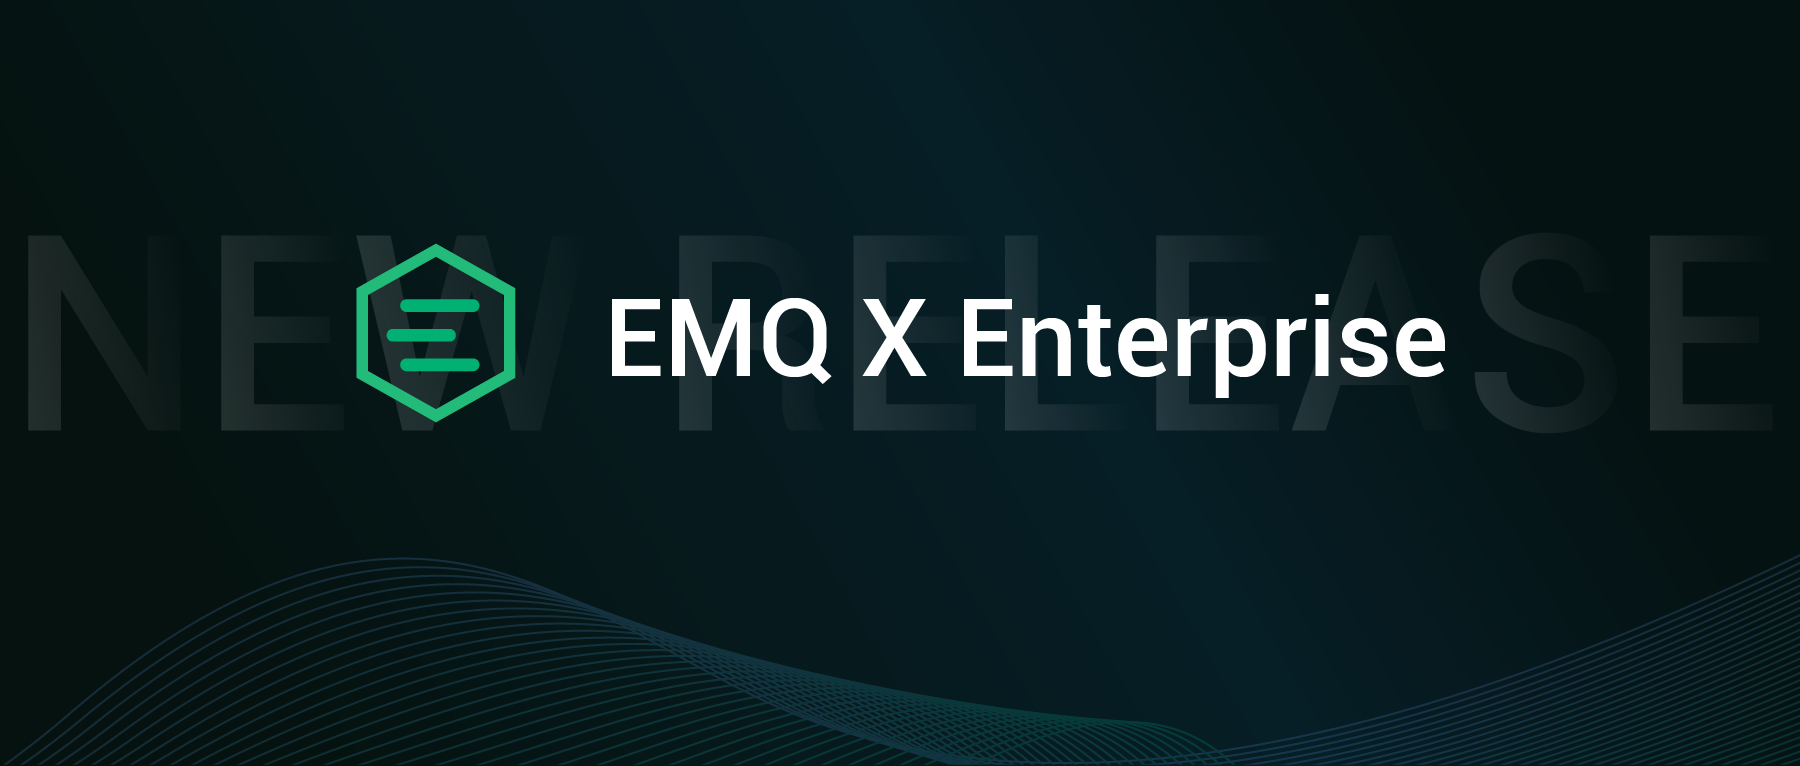 EMQ X 企业版 v4.4.0 发布：新增三项集成支持、增强异常诊断能力